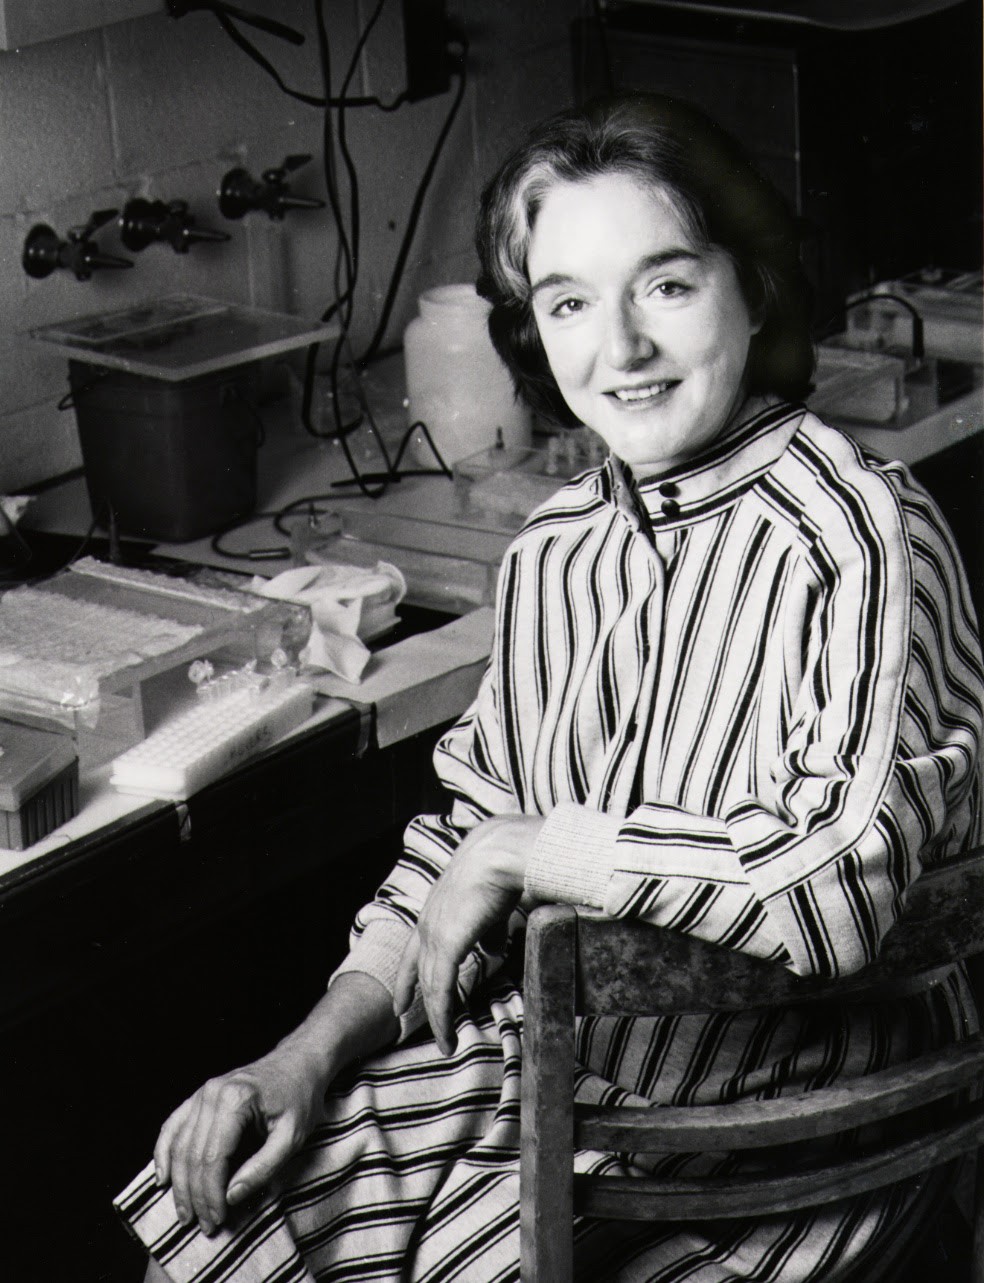  Abigail A. Salyers, pionera en el estudio del microbioma humano